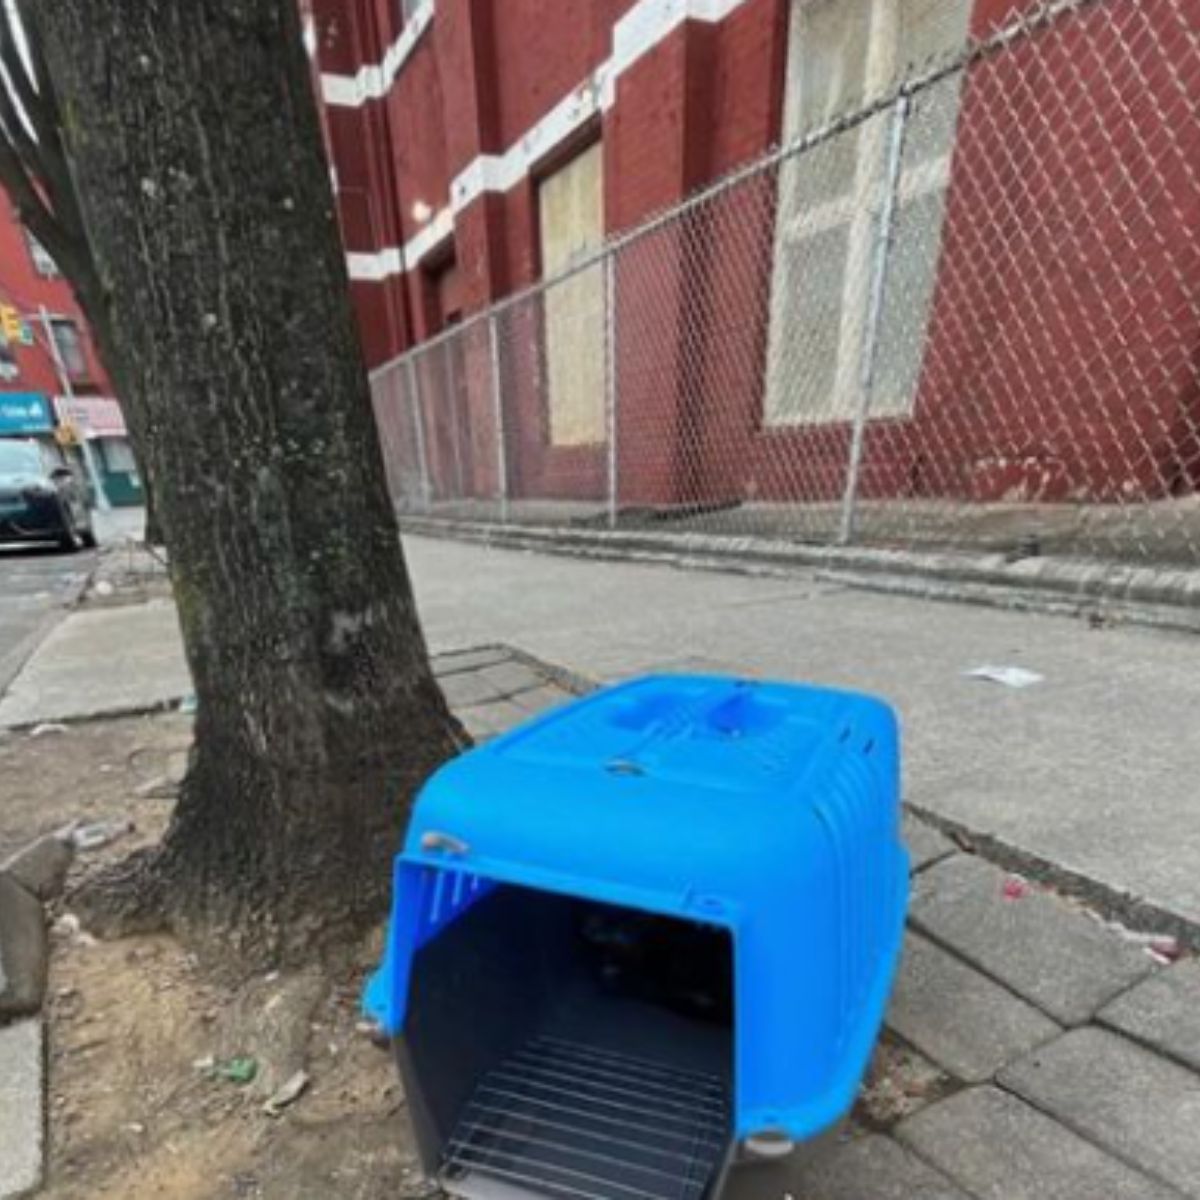 cat in a blue box